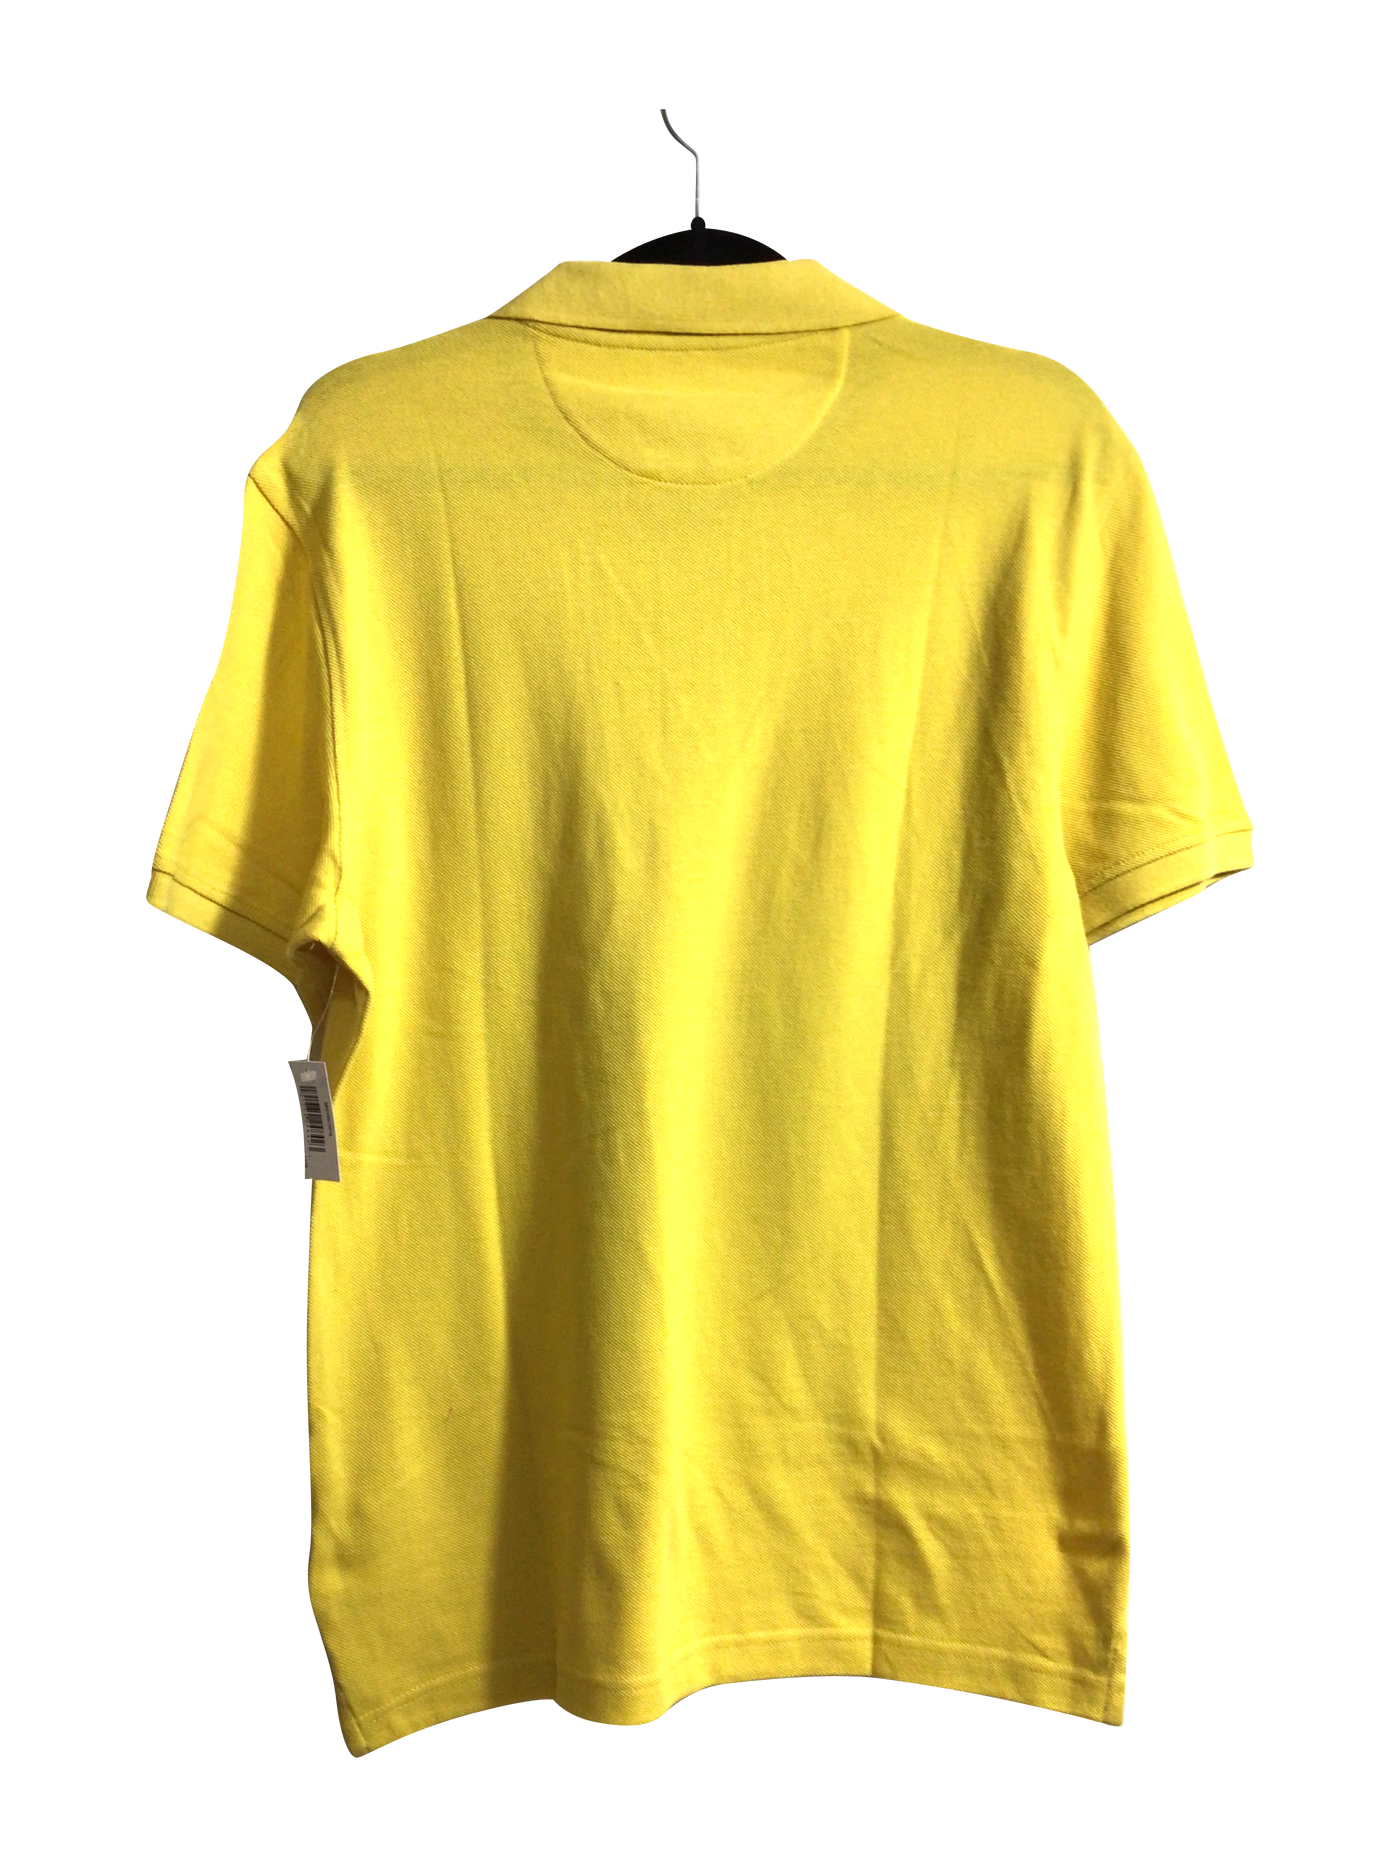 AMAZON ESSENTIALS Men T-Shirts Regular fit in Yellow - Size M | 13.25 $ KOOP